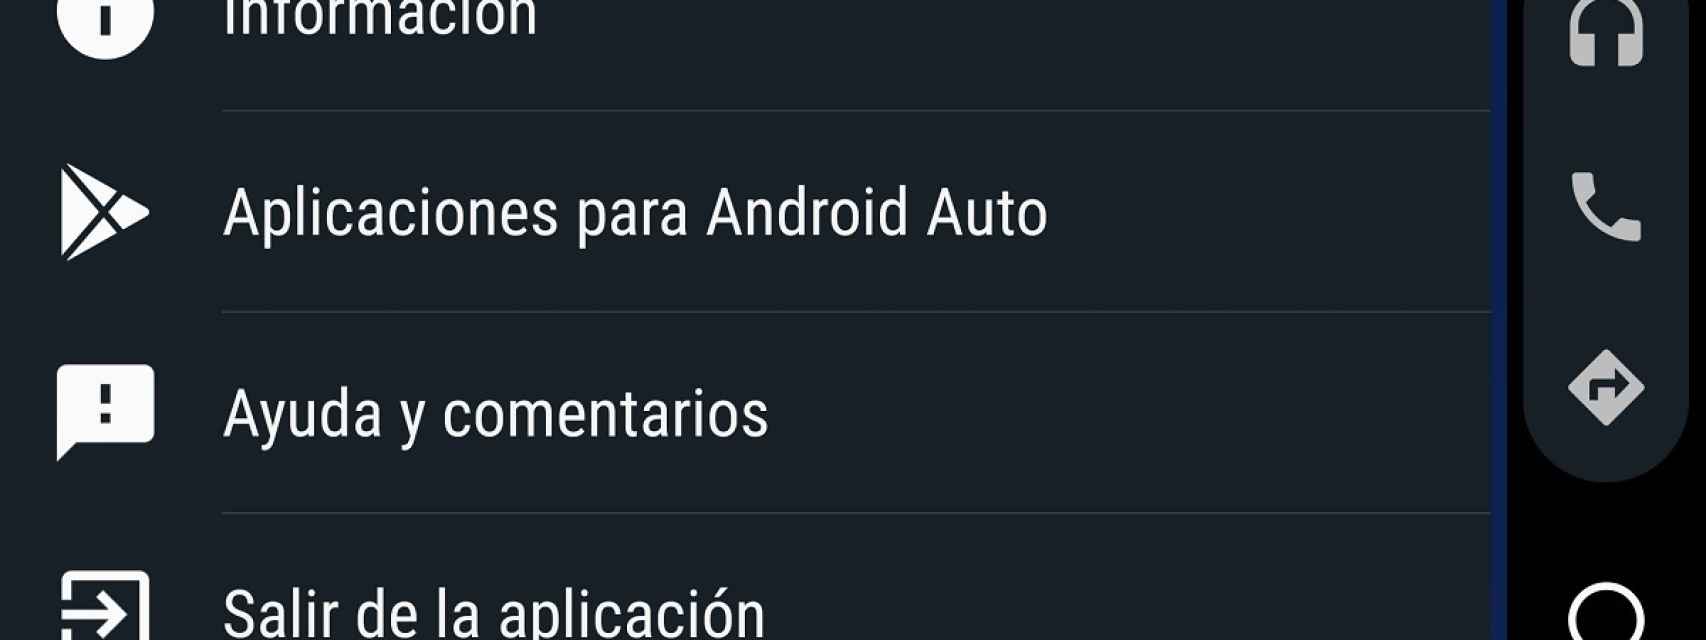 Aplicaciones compatibles Android Auto